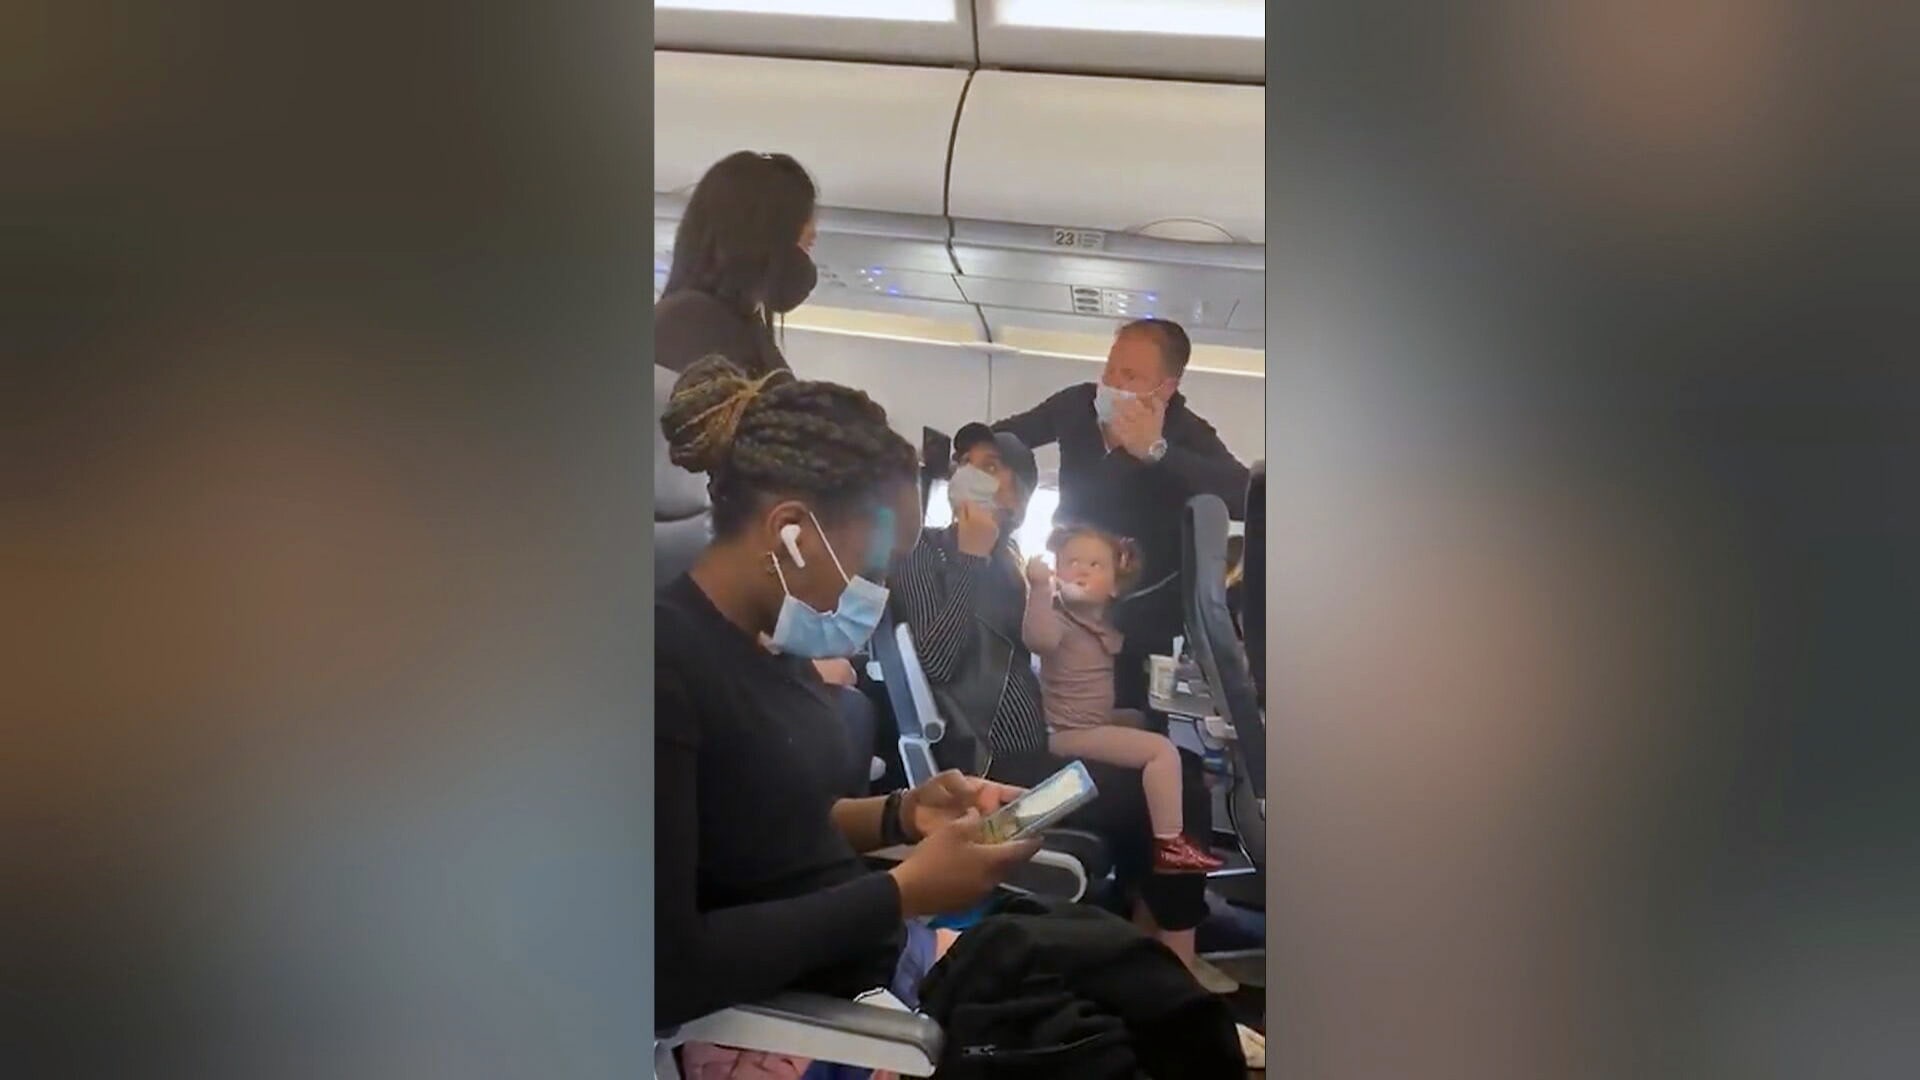 Rodinu vyhodili z letadla, poté i ostatní cestující.